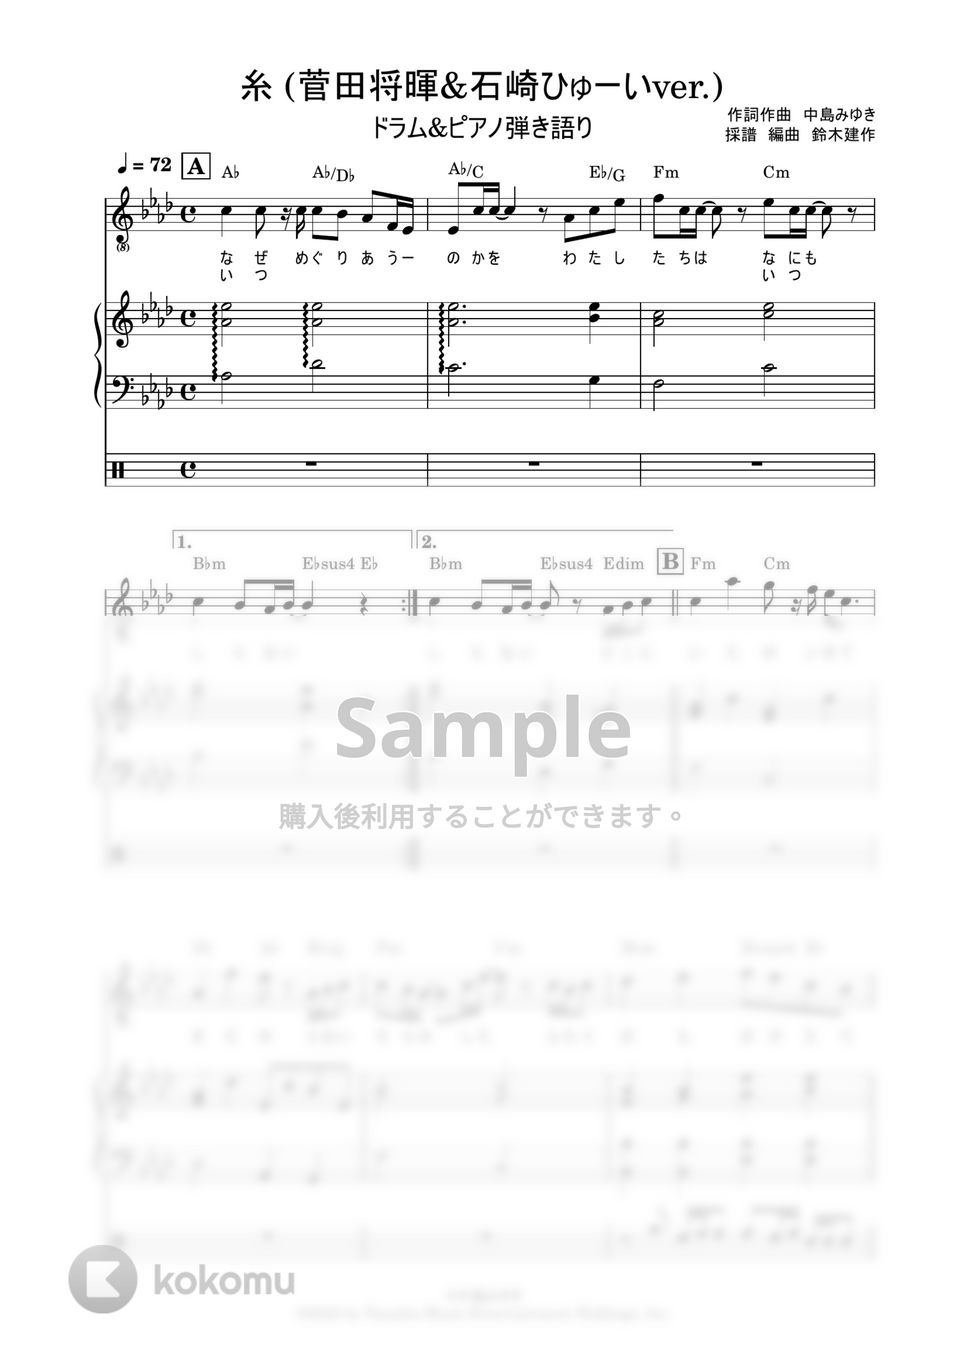 中島みゆき - 糸 (菅田将暉&石崎ひゅーいver) (ドラム&ピアノ弾き語り) by 鈴木建作